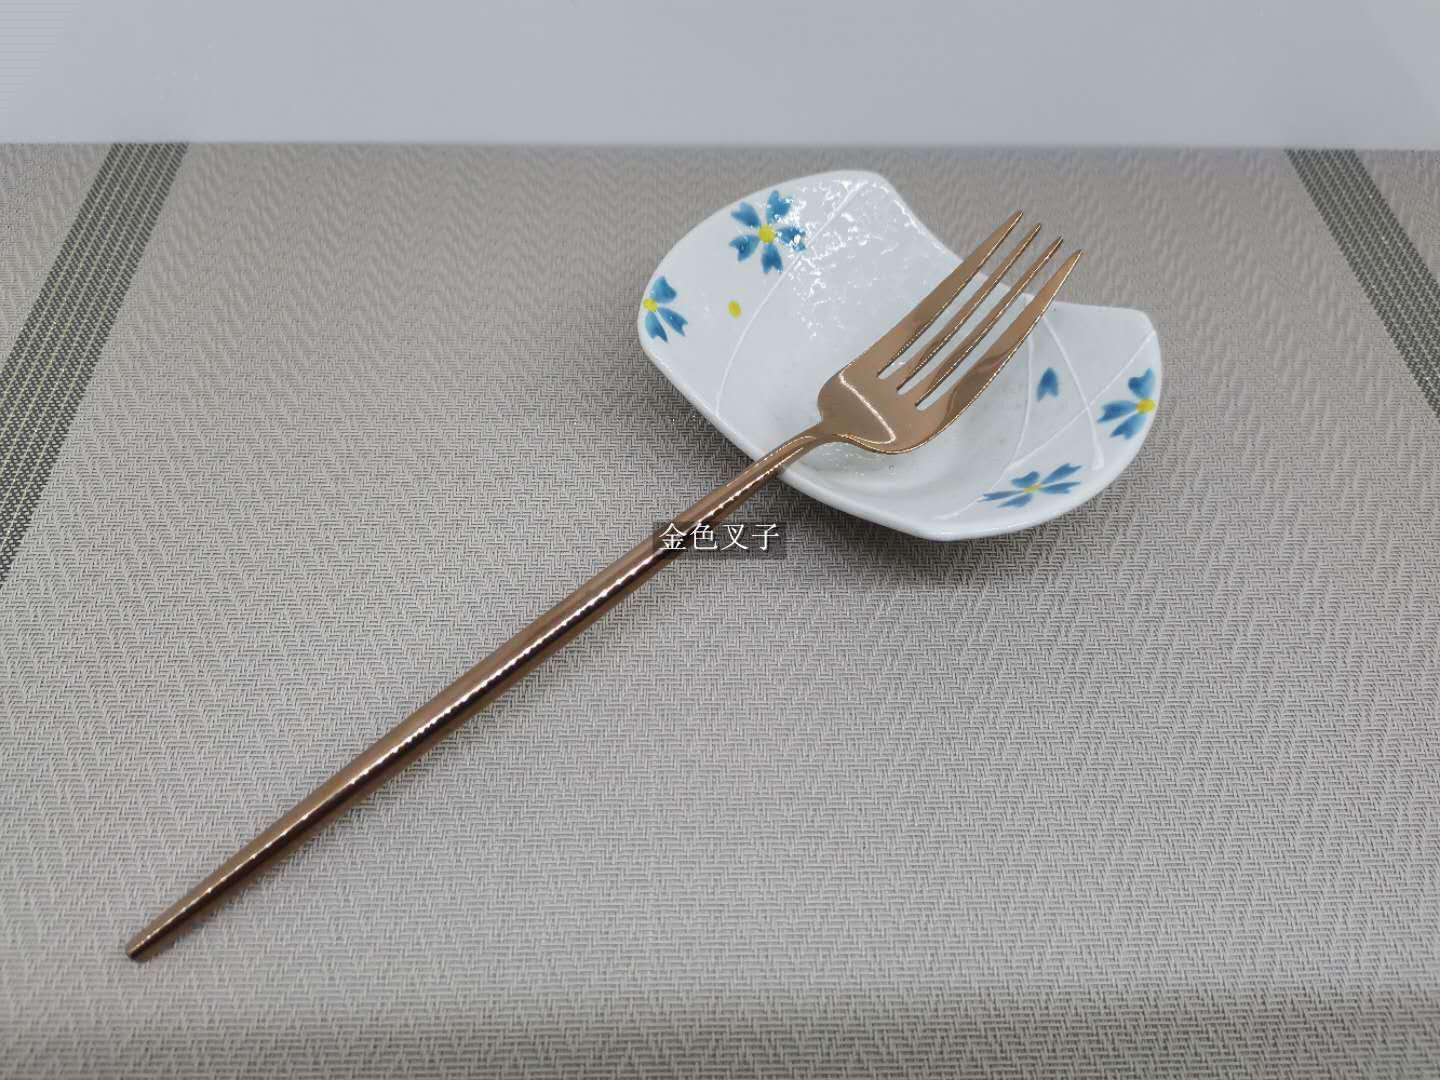 西餐餐具304不锈钢牛排刀叉勺三件套装 筷子甜品咖啡长柄勺水果叉详情图4